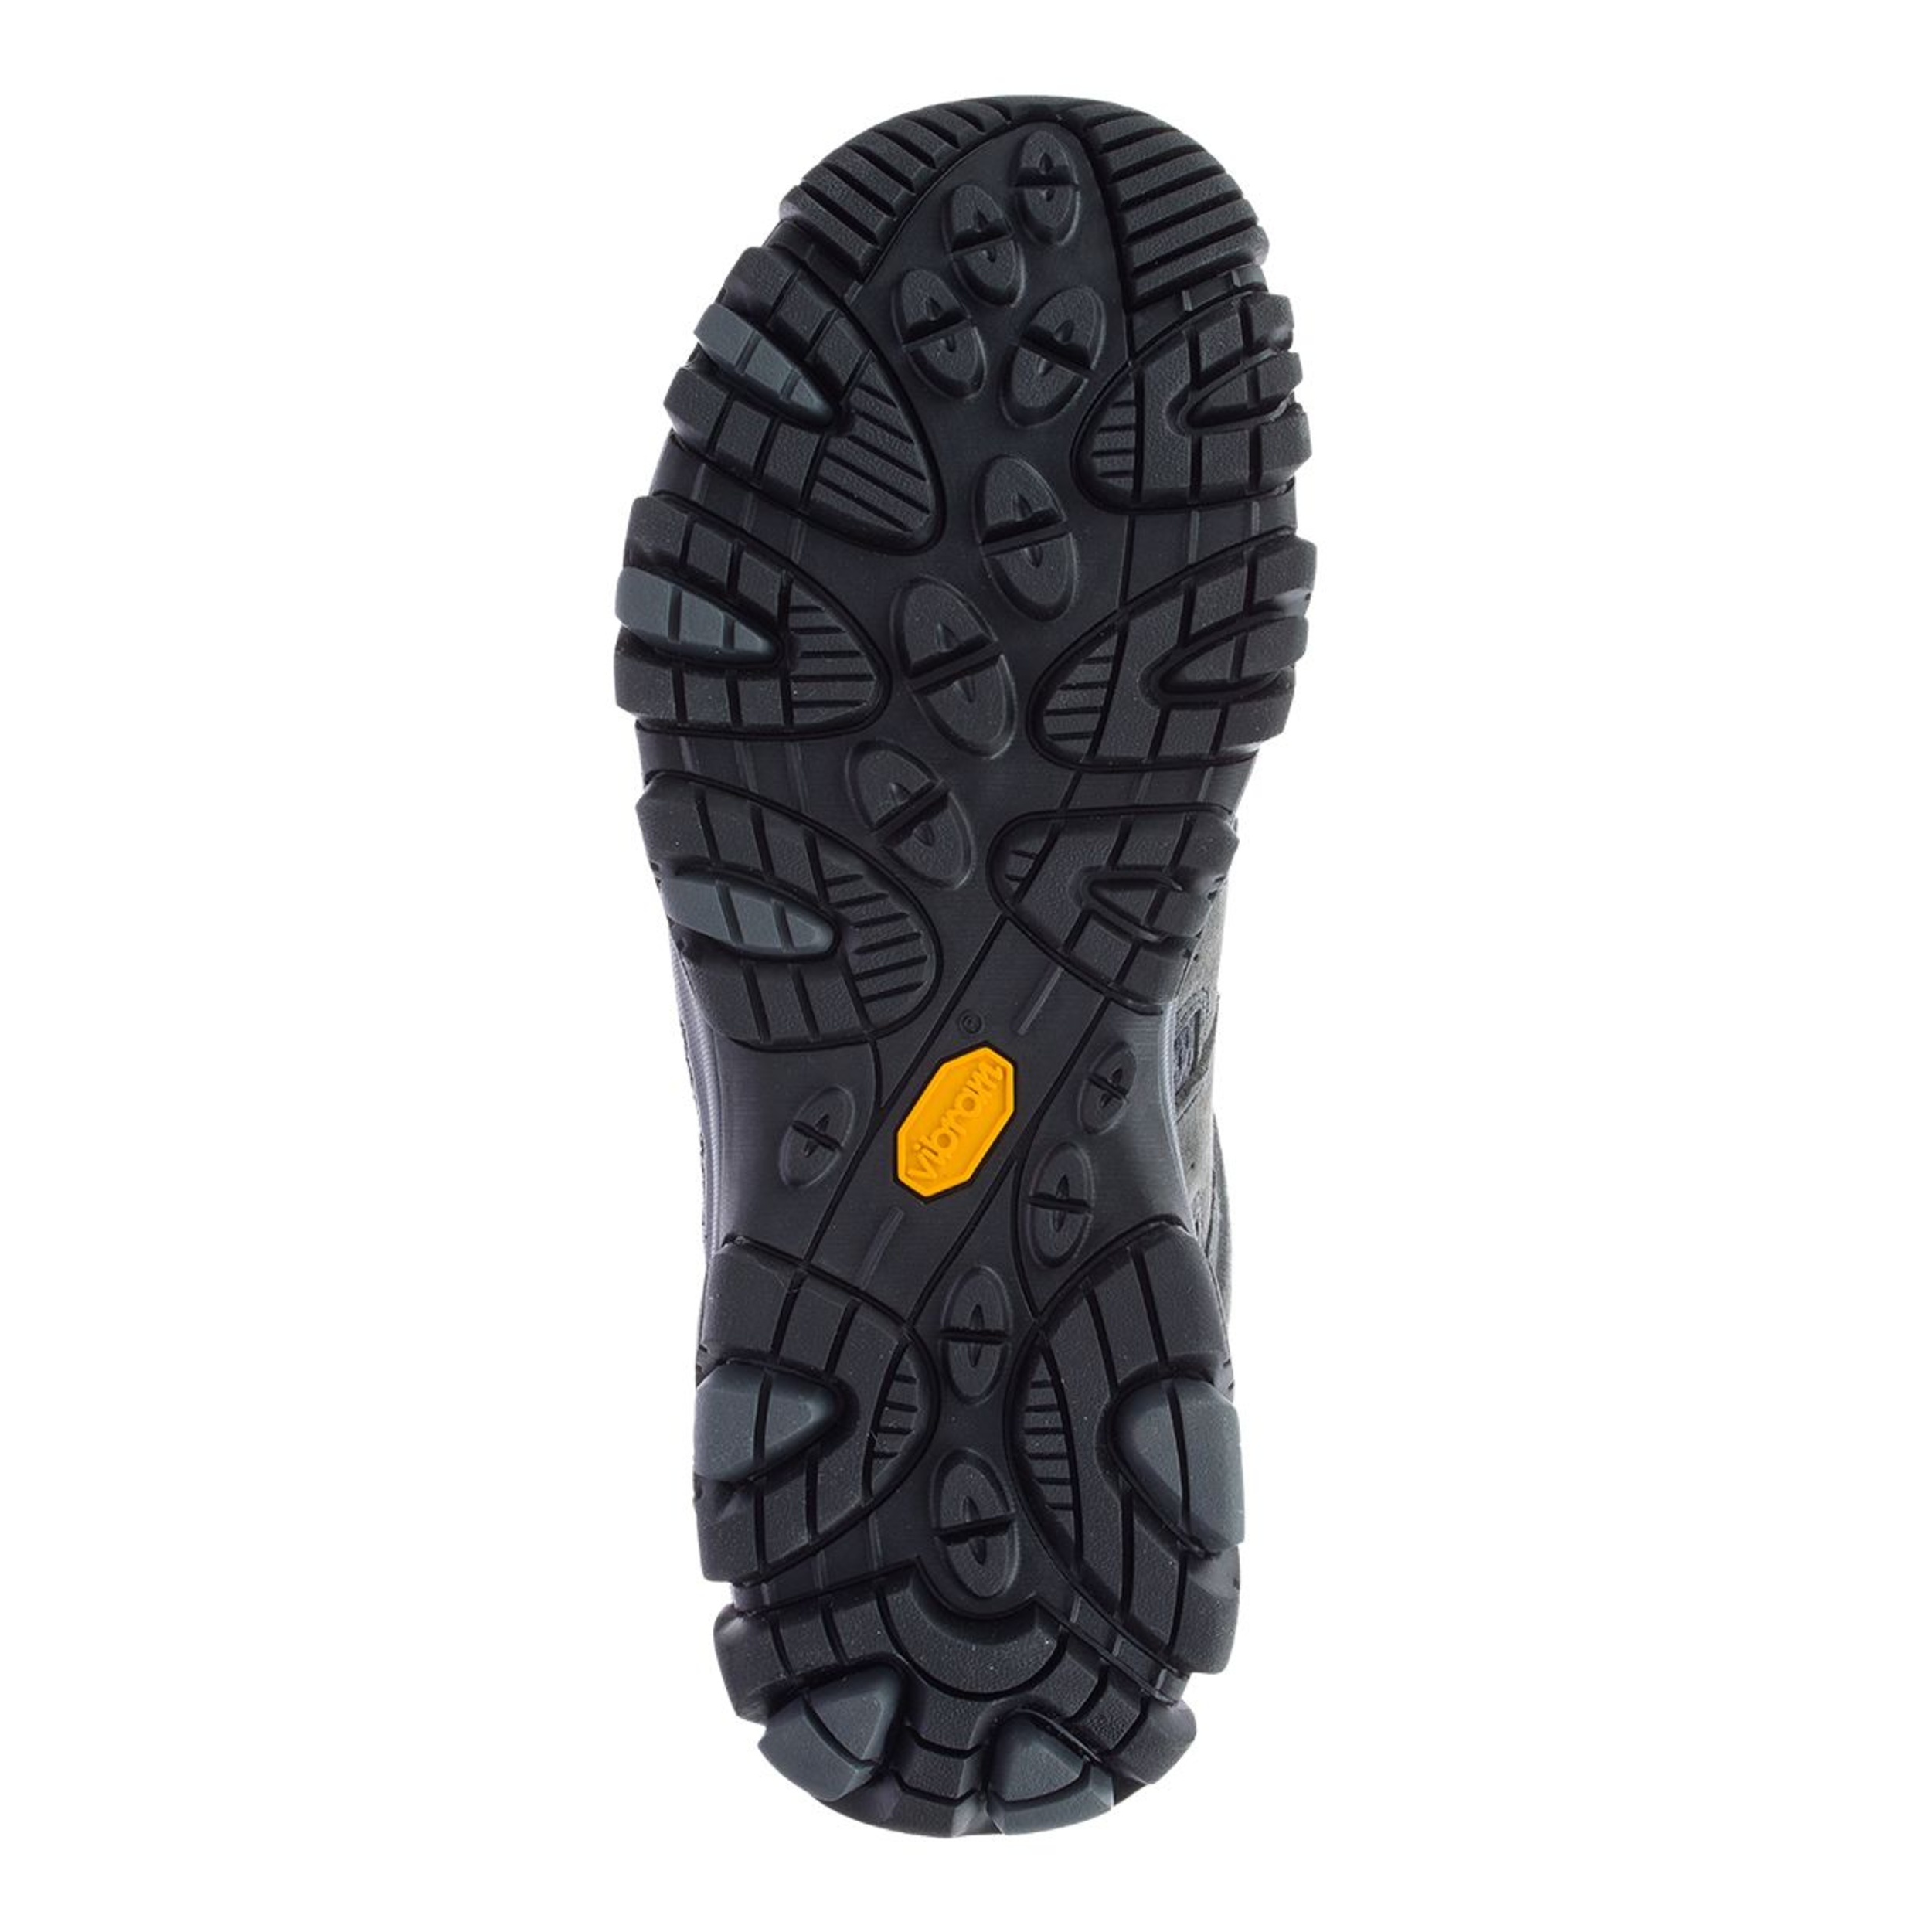 Merrell Men's Moab 3 Wide Hiking Shoes, Trail, Waterproof | SportChek